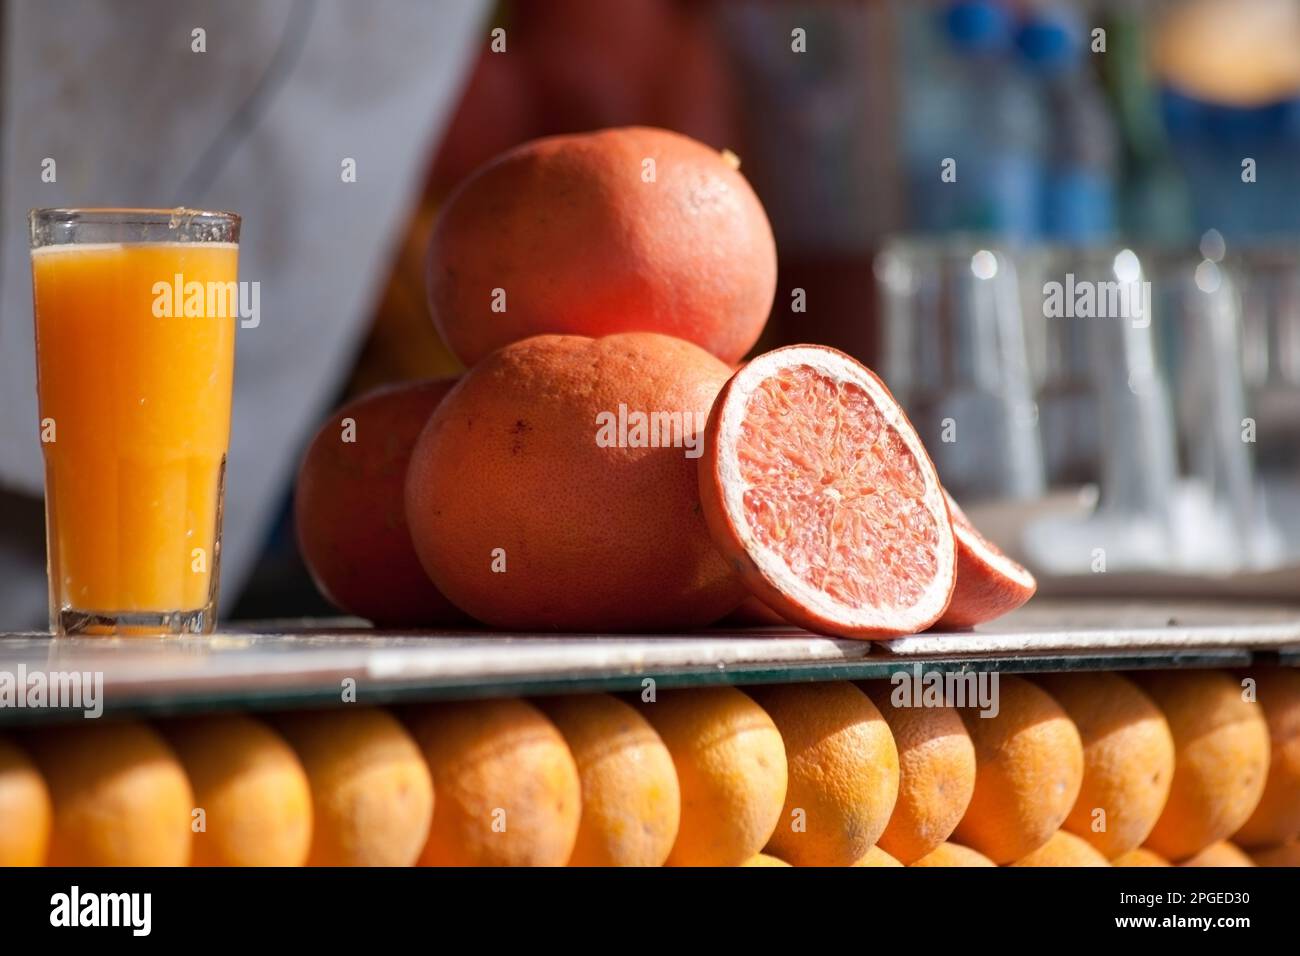 venditori di aranciata nella piazza jamaa el fna, marrakech, marocco, nord africa, magreb, Stock Photo